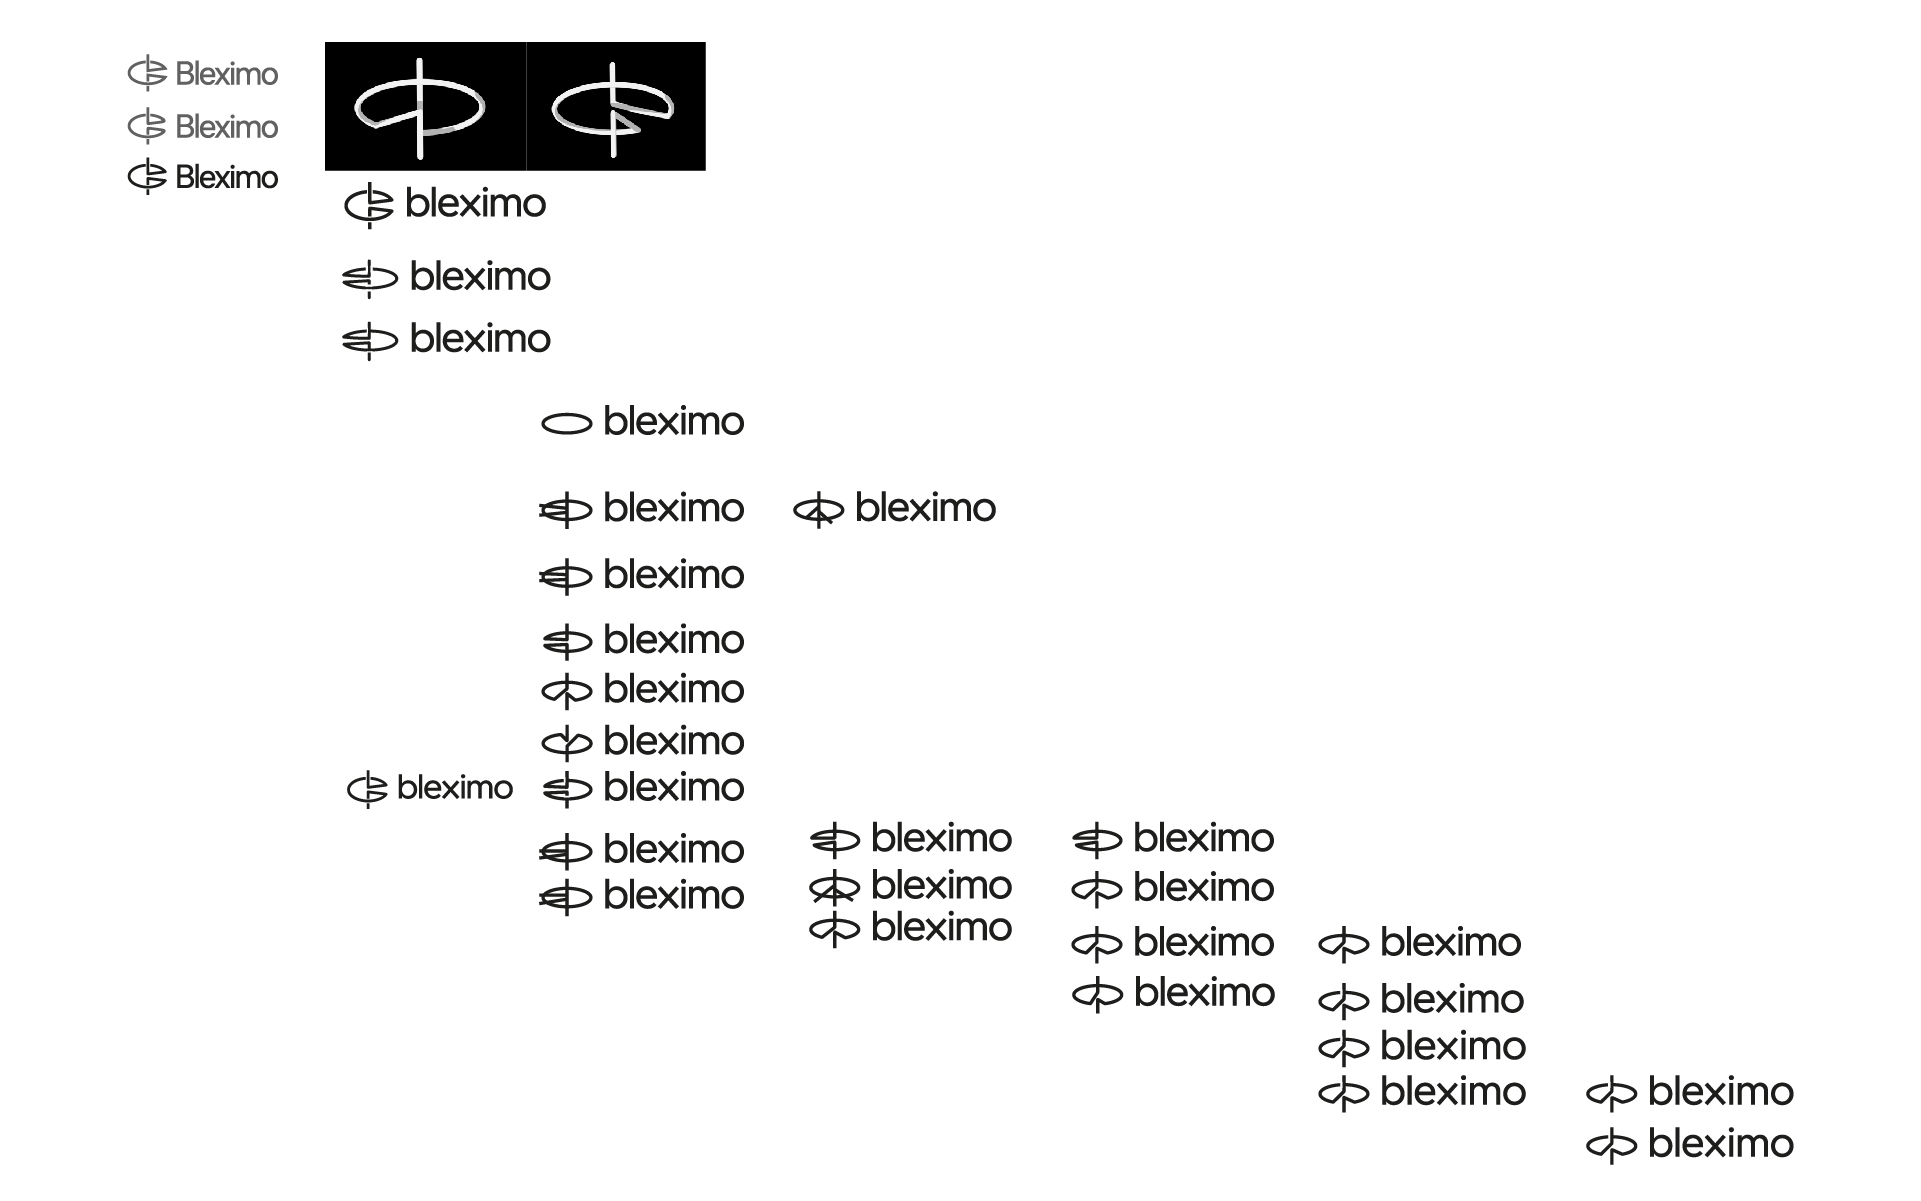 bleximo process 8